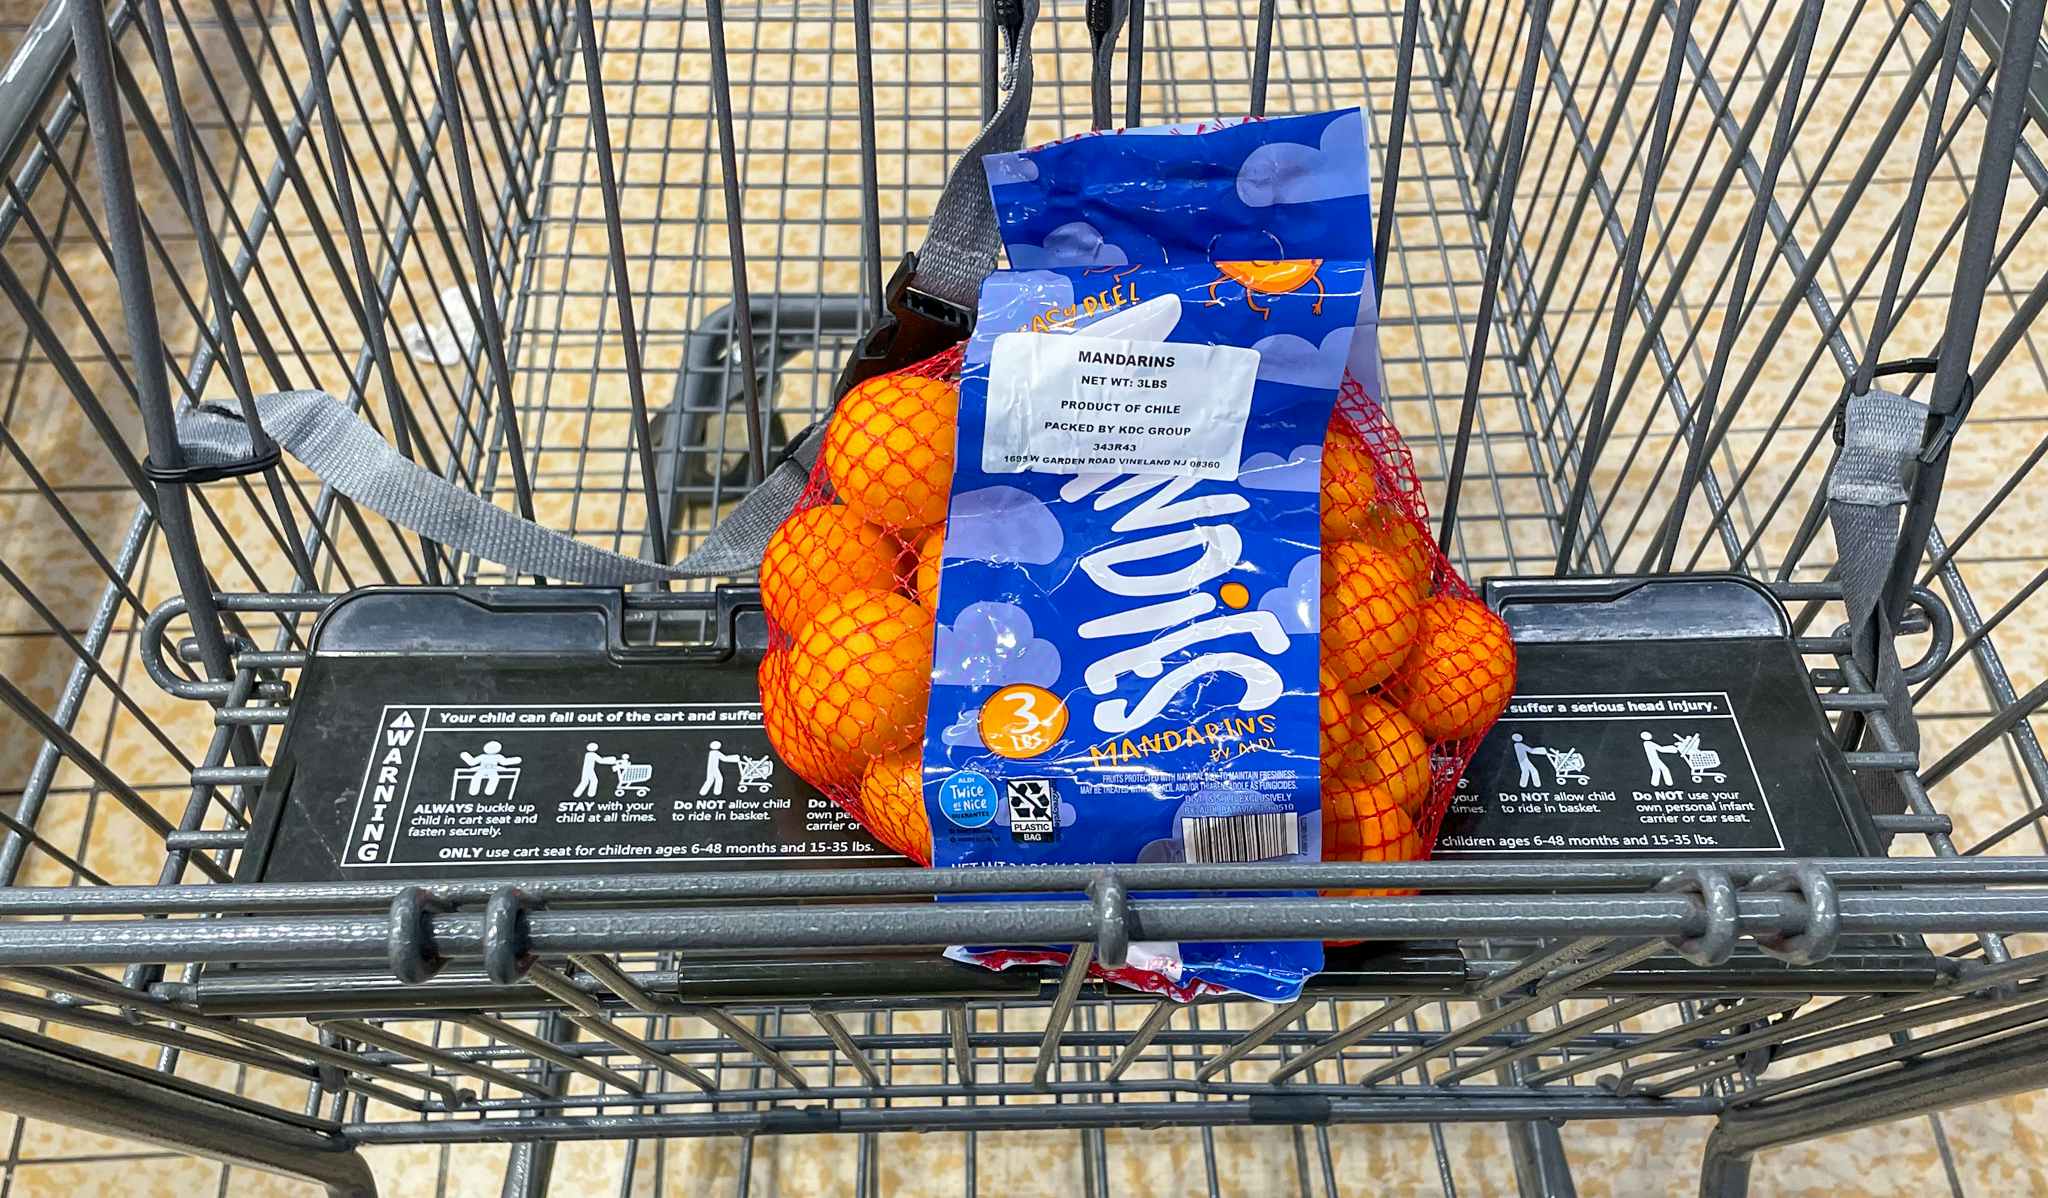 mandarins in a cart at aldi